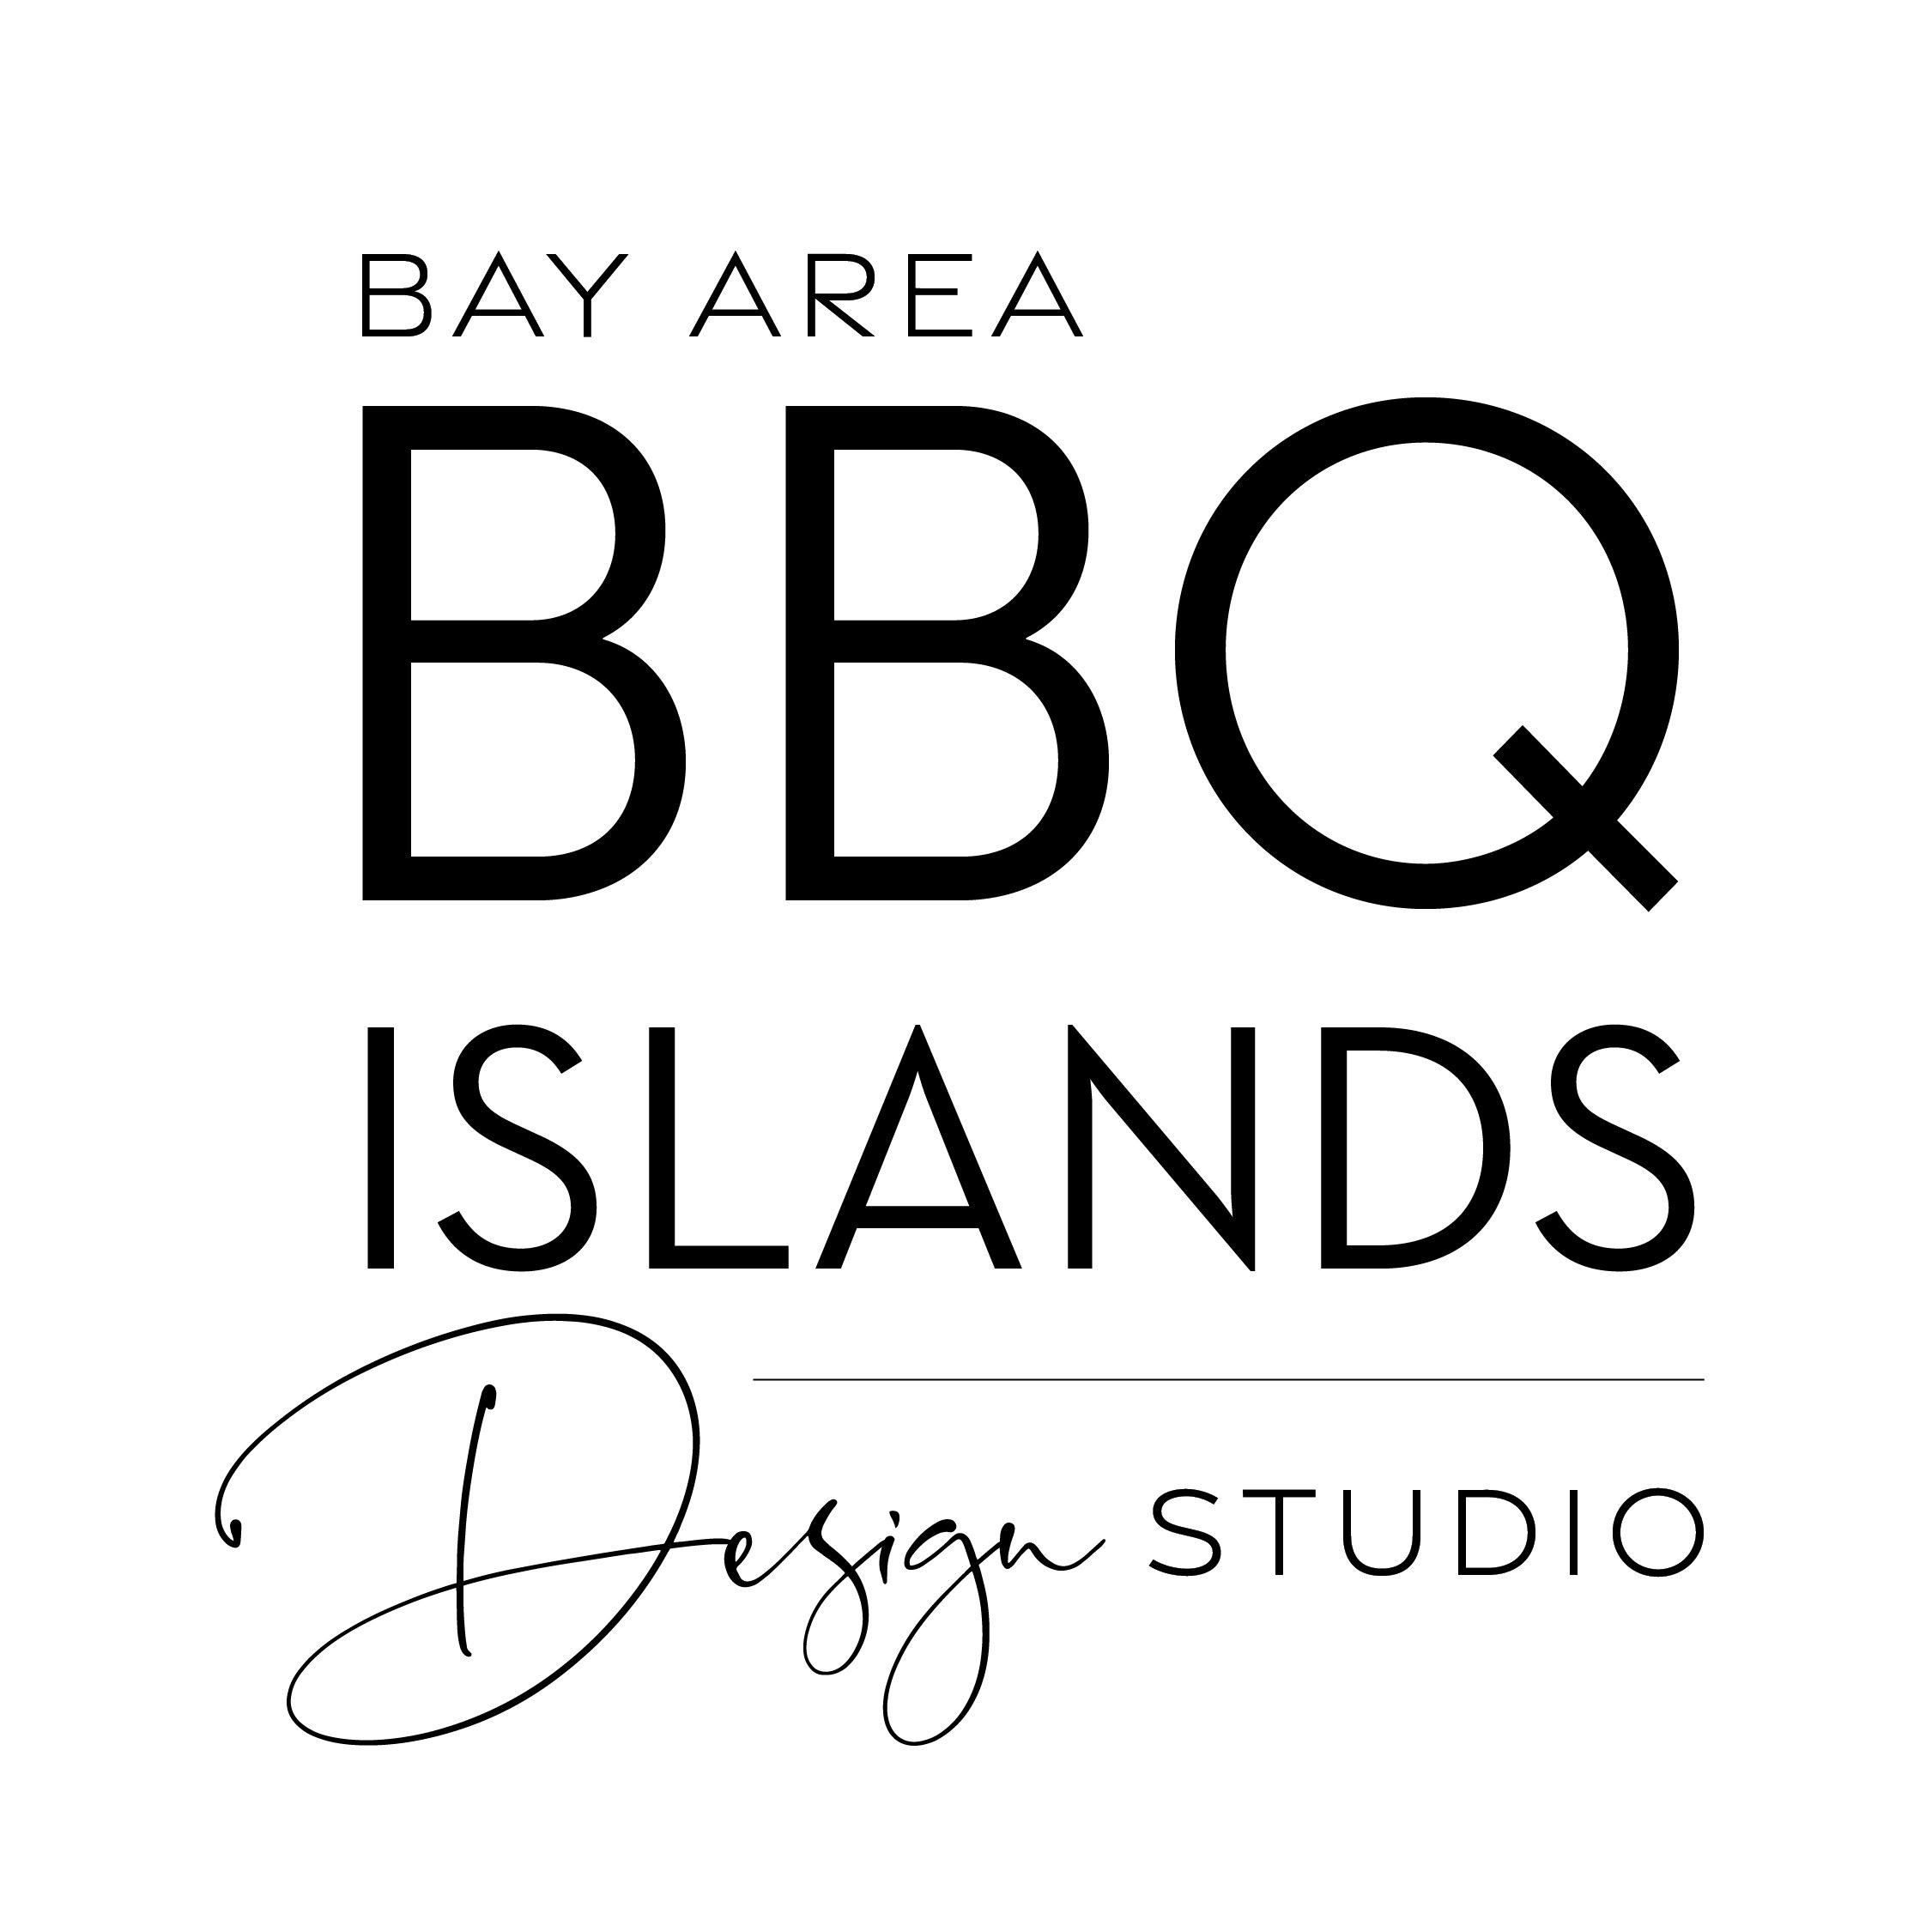 Bay Area BBQ Islands Design Studio - Livermore, CA 94551 - (925)606-9999 | ShowMeLocal.com